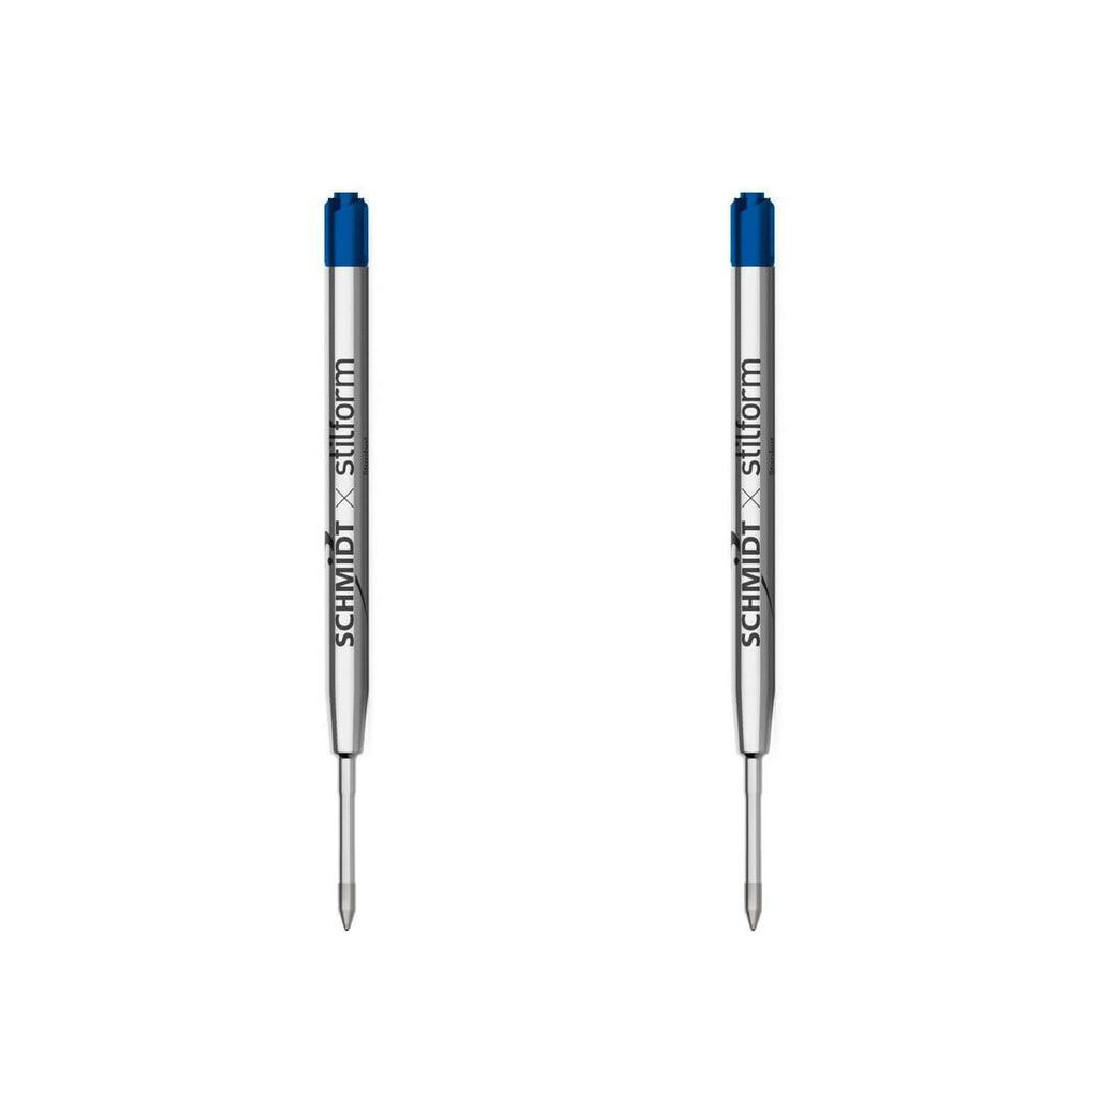 Stilform ballpoint pen refill blue 2 pcs Schmidt